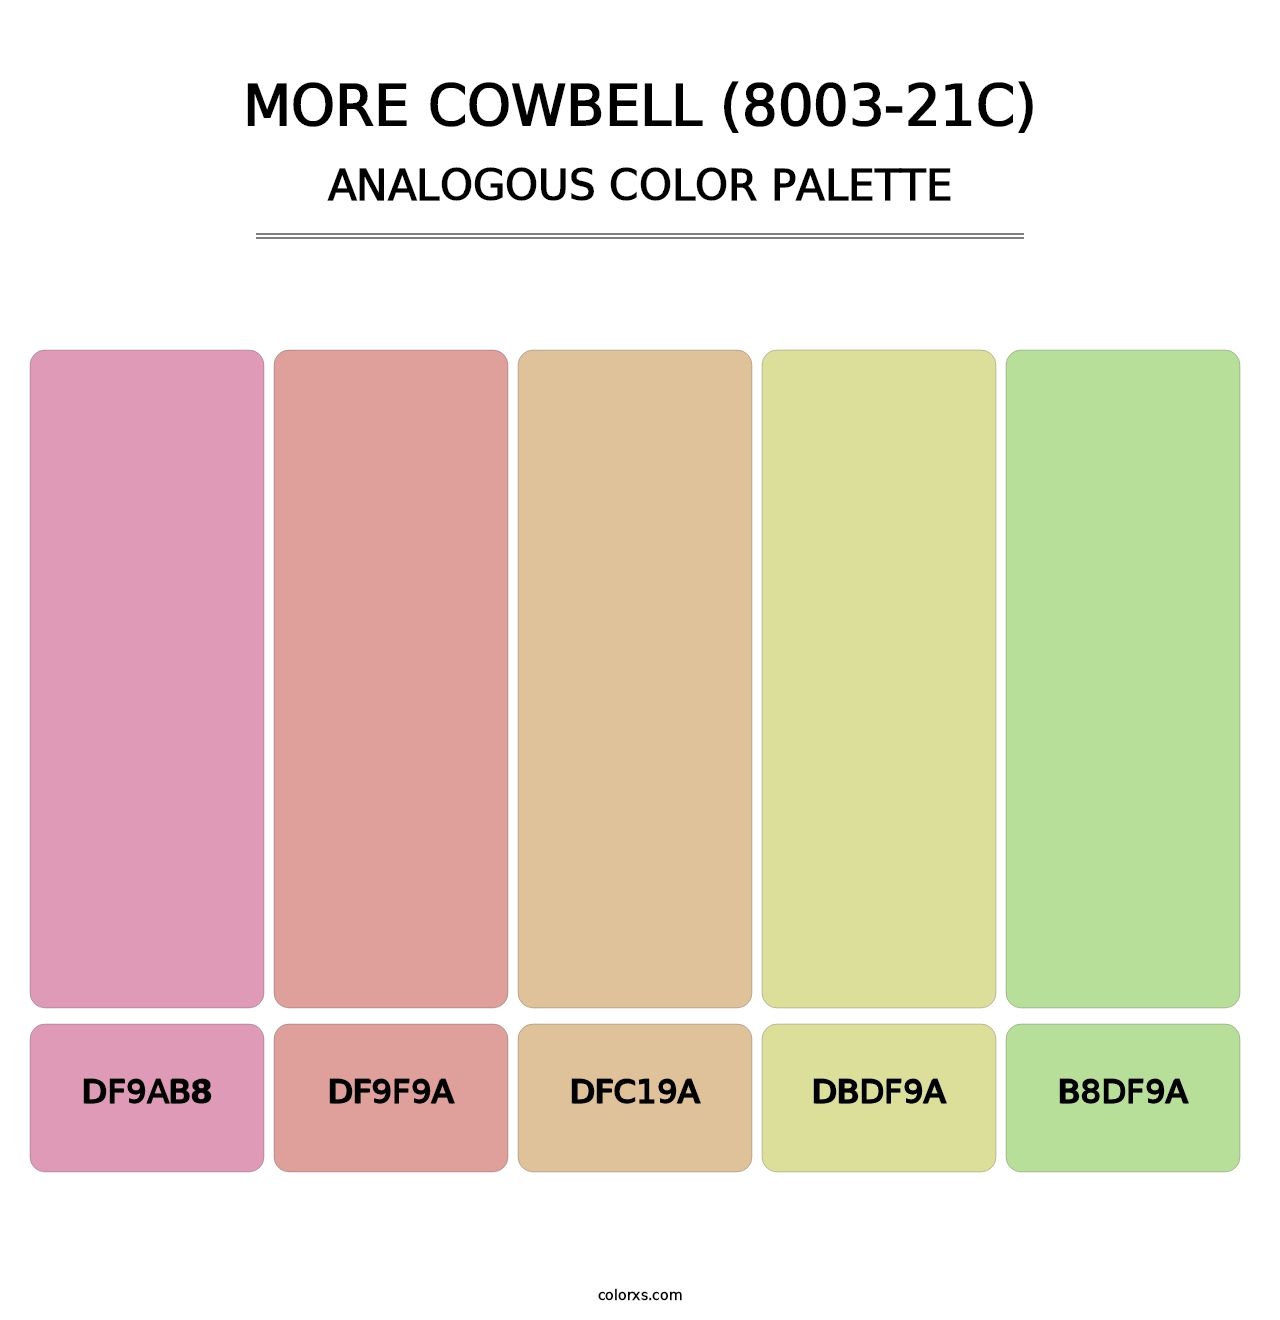 More Cowbell (8003-21C) - Analogous Color Palette